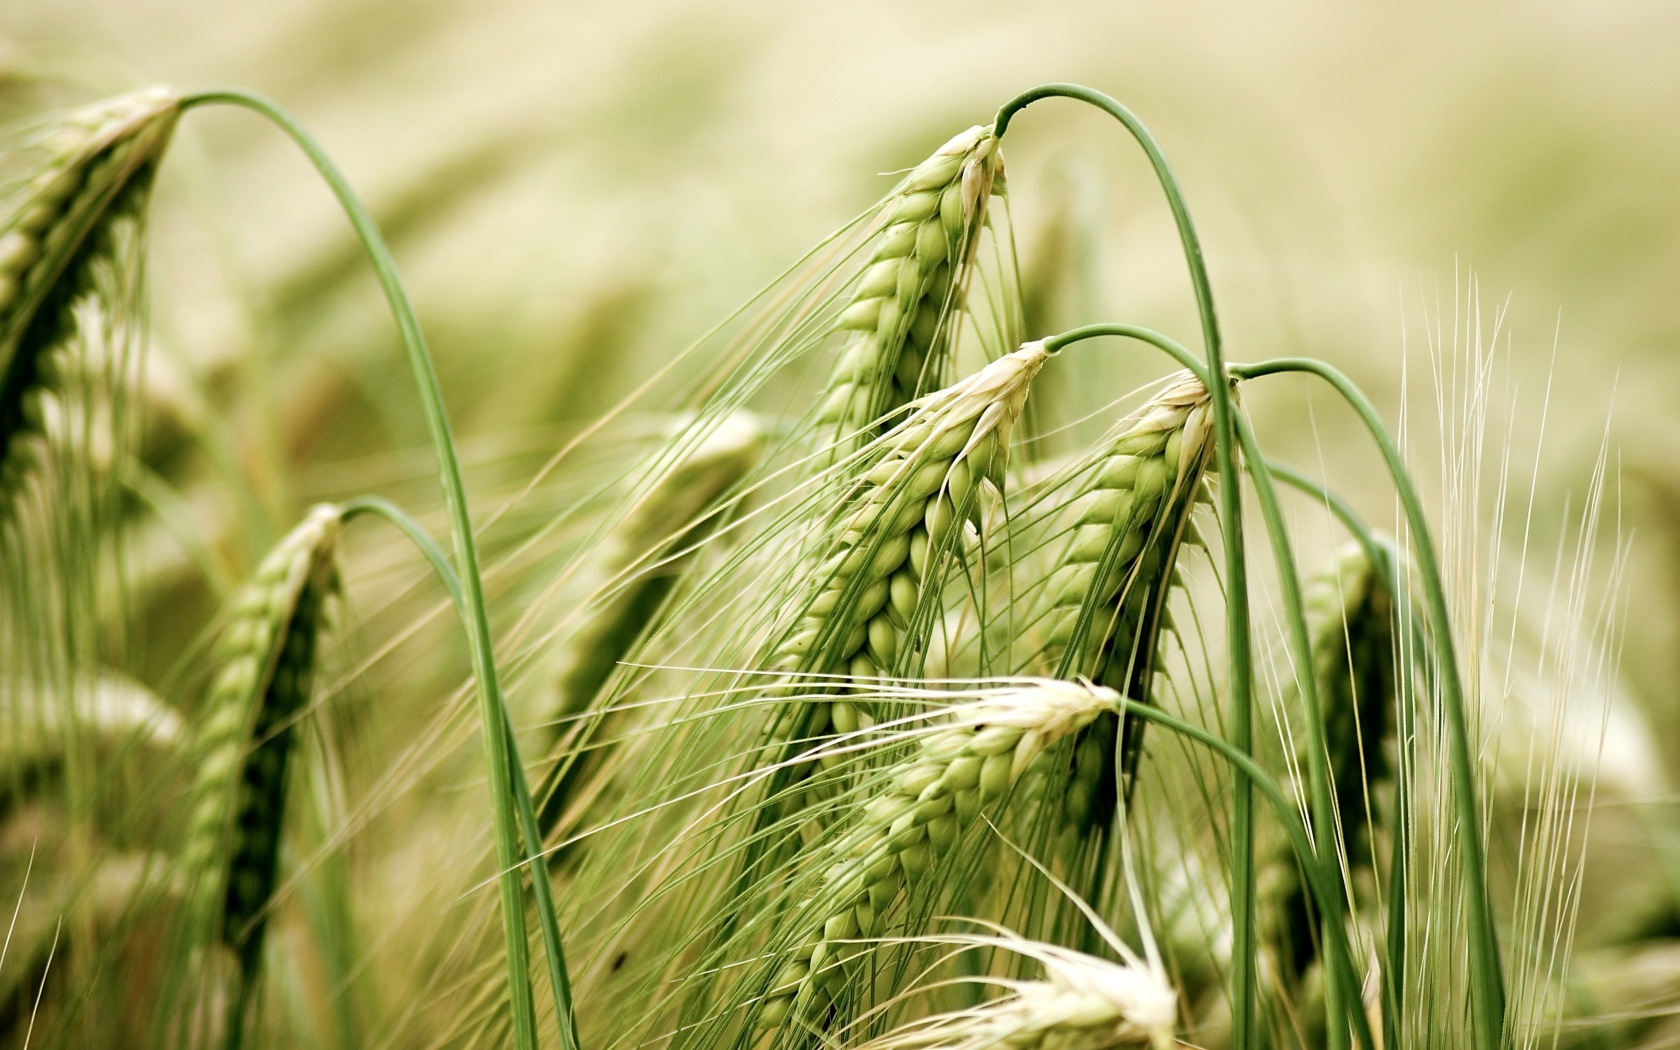 Зеленые колосья пшеницы крупным планом